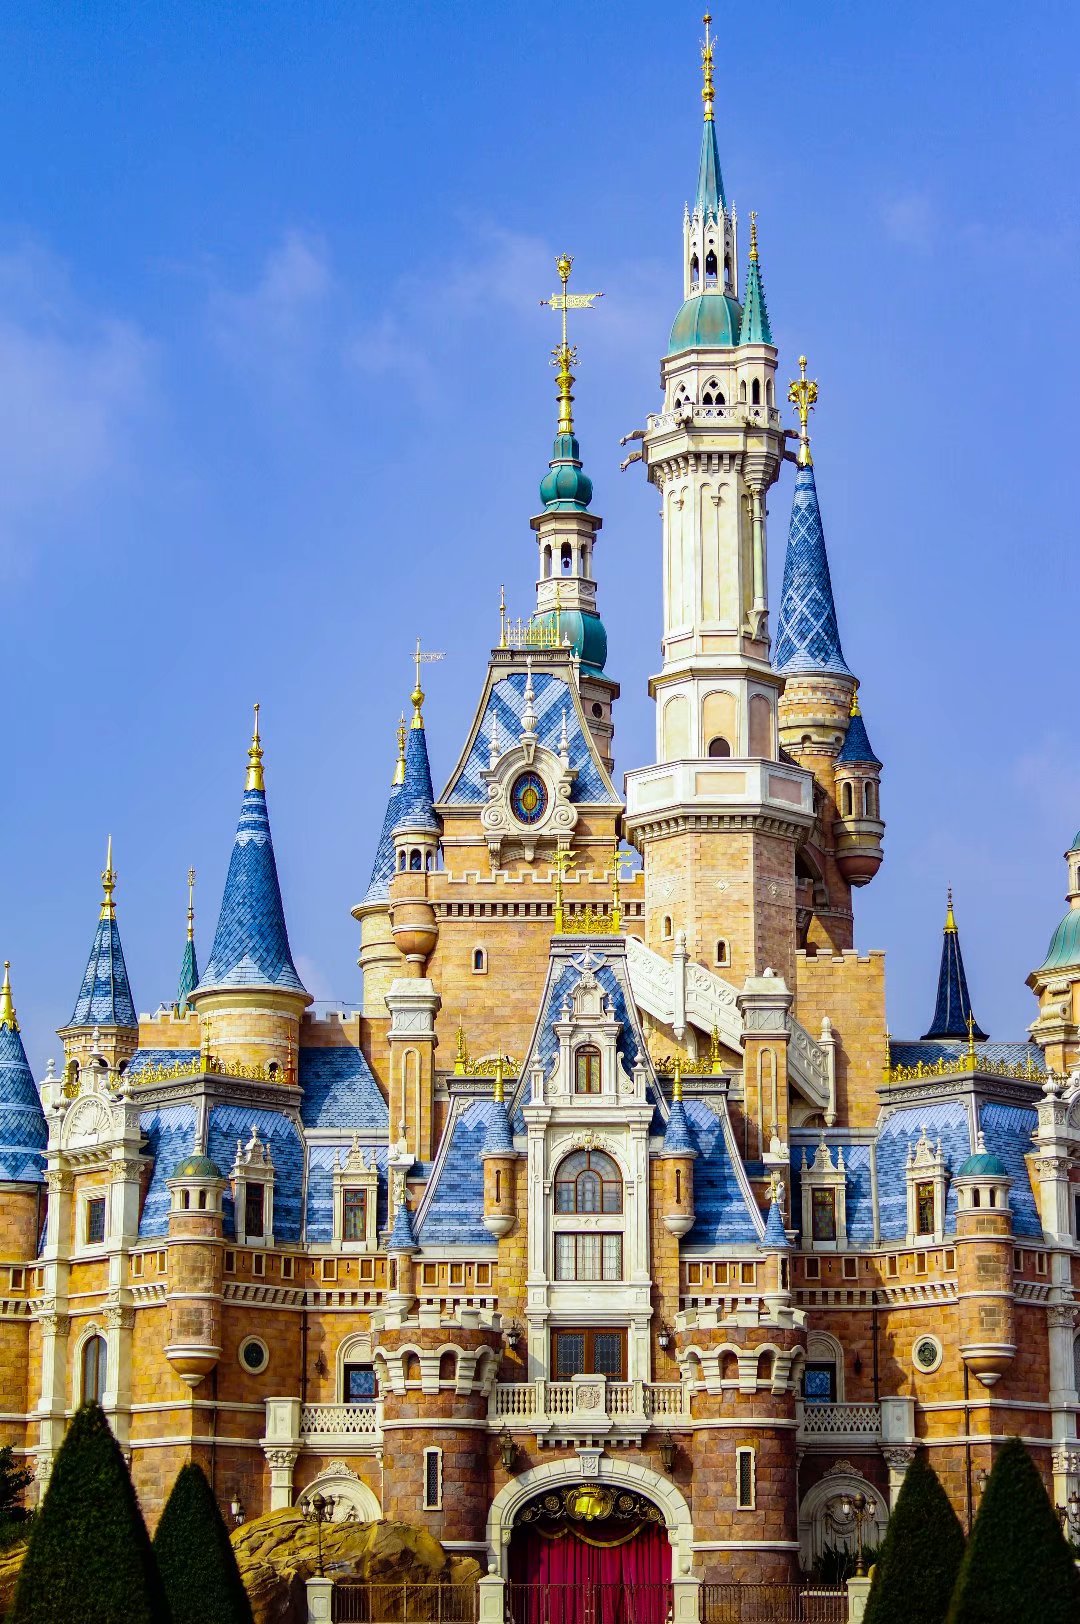 迪士尼梦幻城堡,可惜没去后面的梦幻世界,好像有公主可以拍